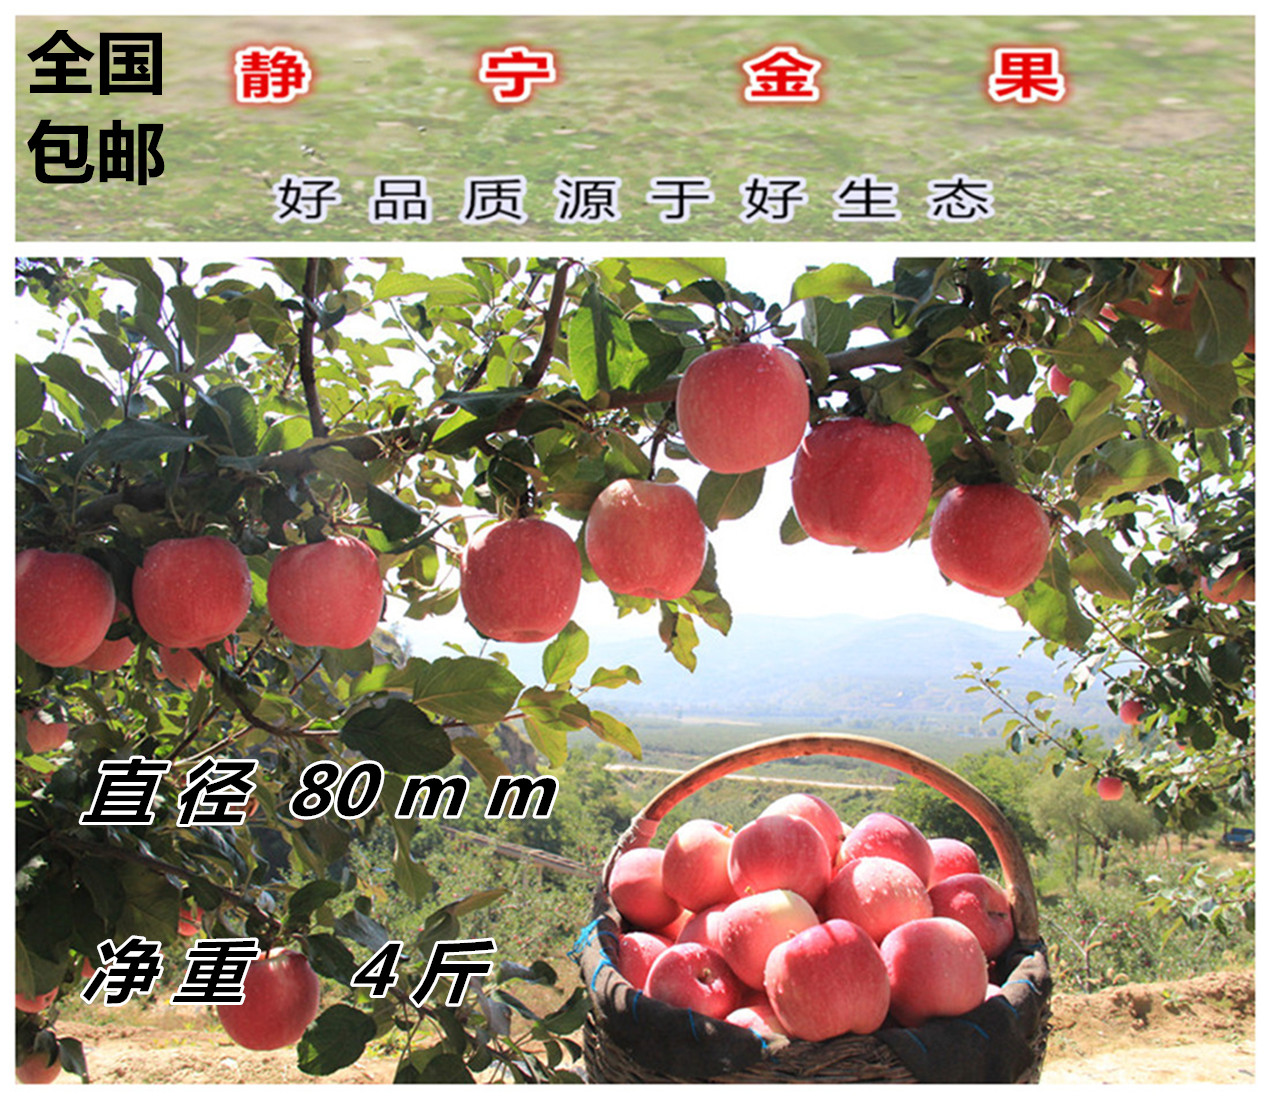 静宁苹果红富士水果脆甜可口纯天然 现摘新鲜批发80#4斤优惠装